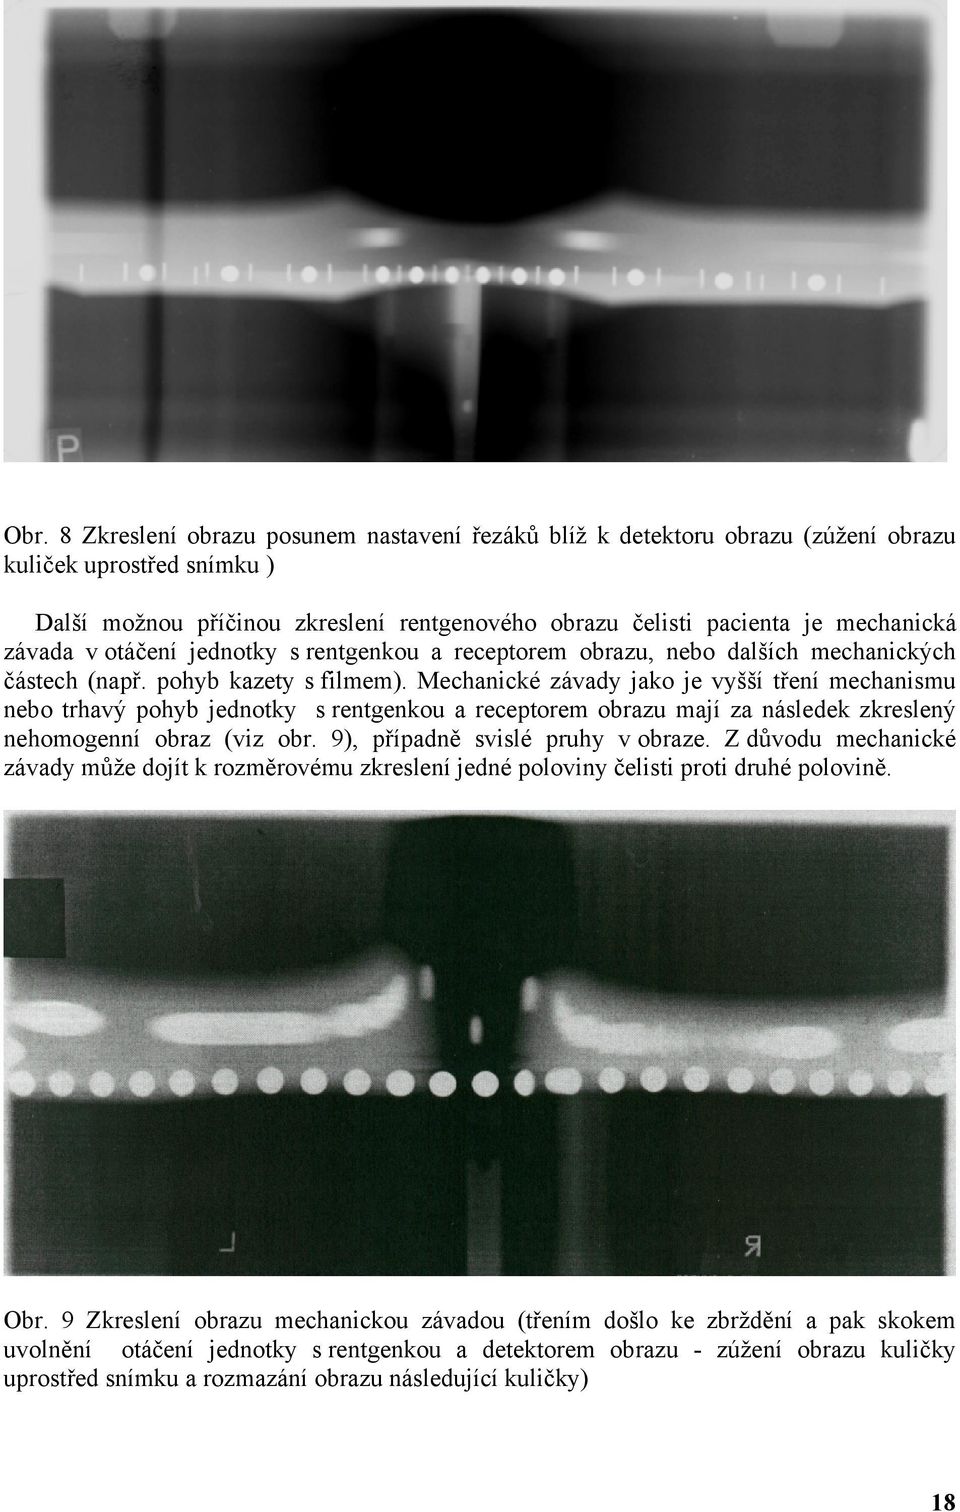 Mechanické závady jako je vyšší tření mechanismu nebo trhavý pohyb jednotky s rentgenkou a receptorem obrazu mají za následek zkreslený nehomogenní obraz (viz obr. 9), případně svislé pruhy v obraze.